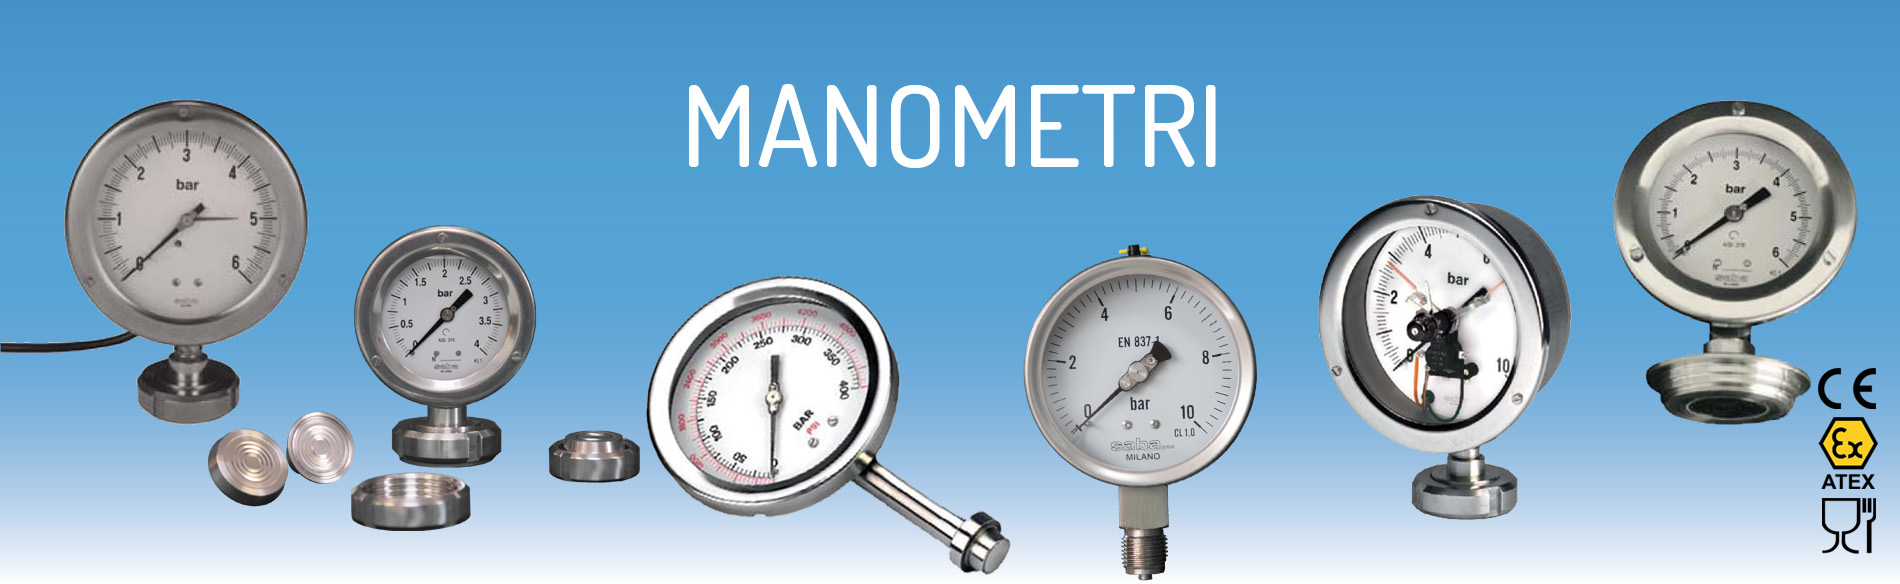 Manometri | misuratori di pressione analogici e digitali